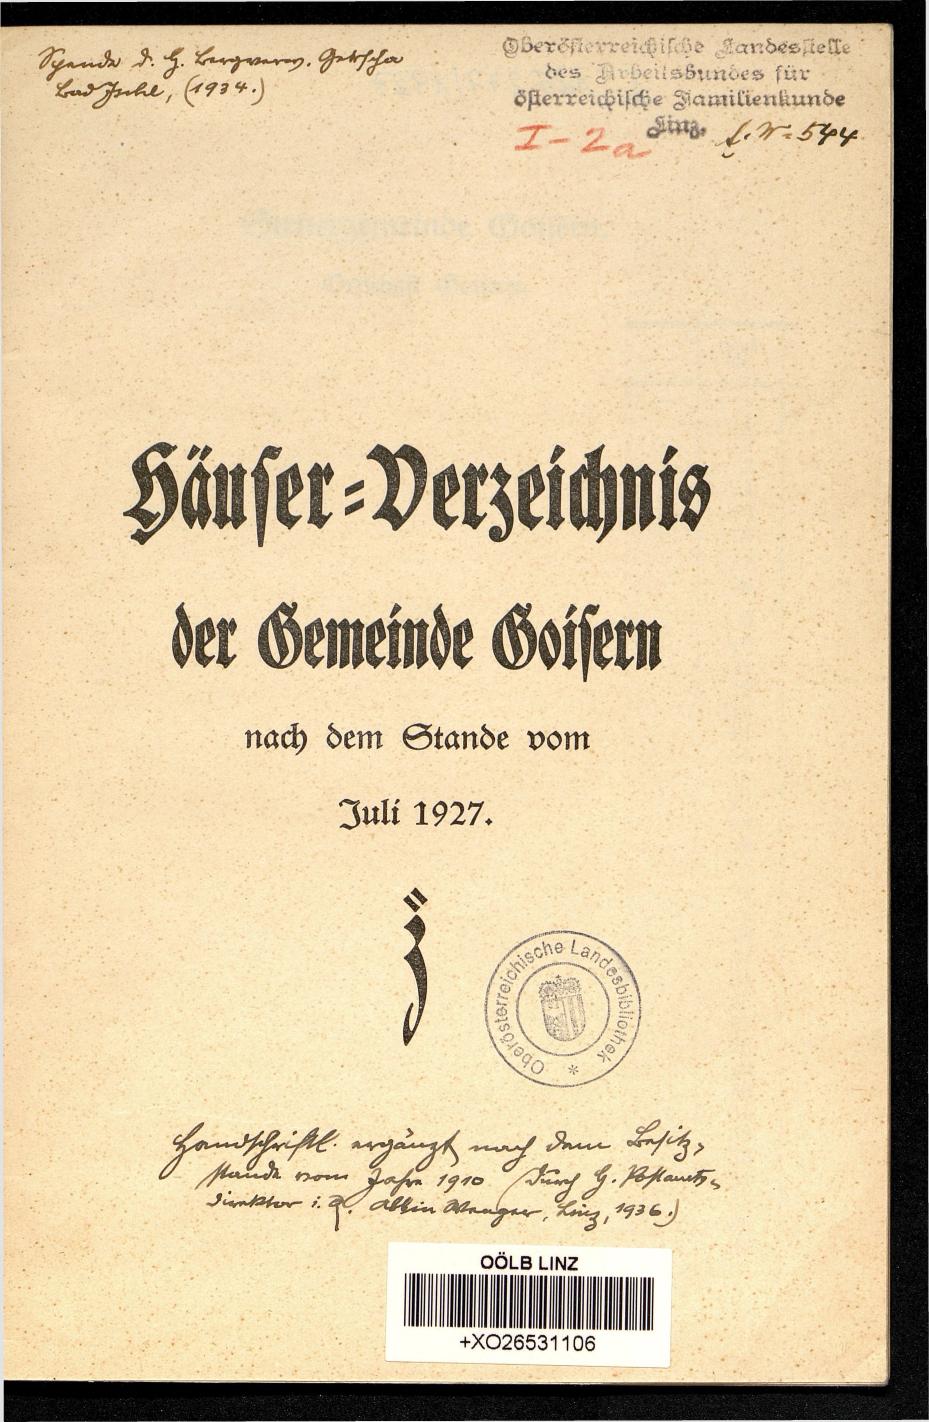 Häuser-Verzeichnis der Gemeinde Goisern nach dem Stande von Juli 1927 - Seite 3